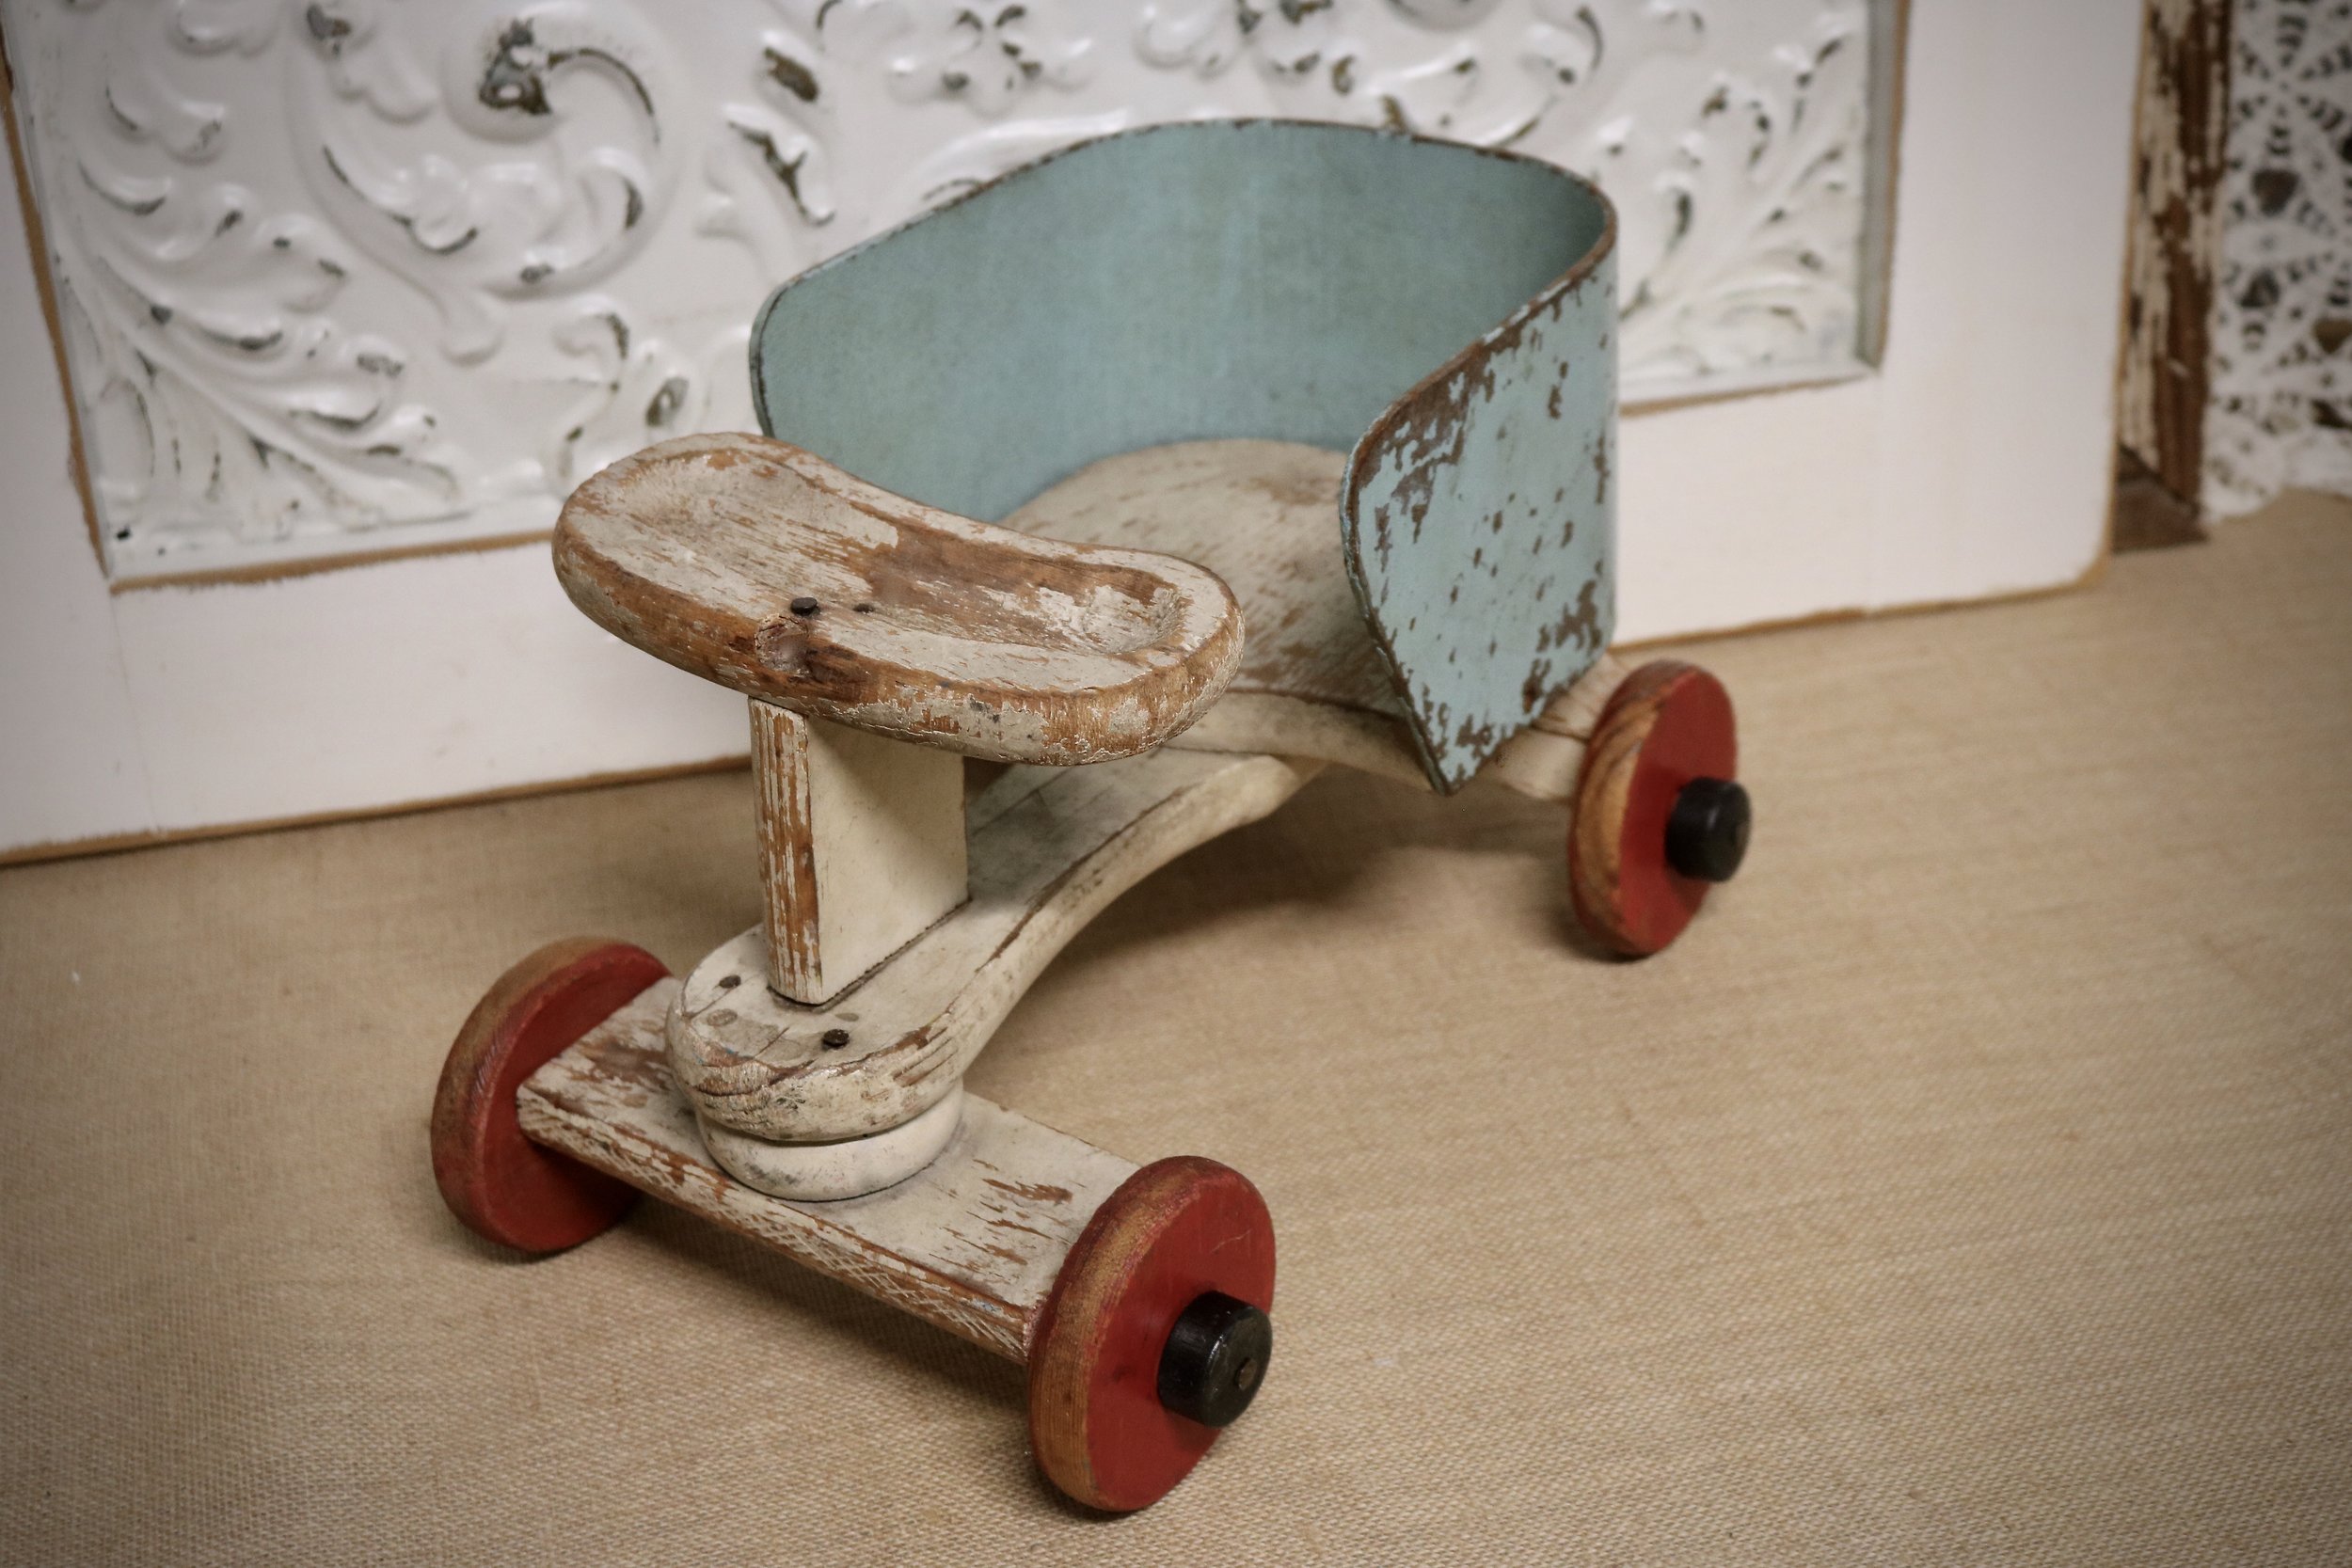 baby cart wooden